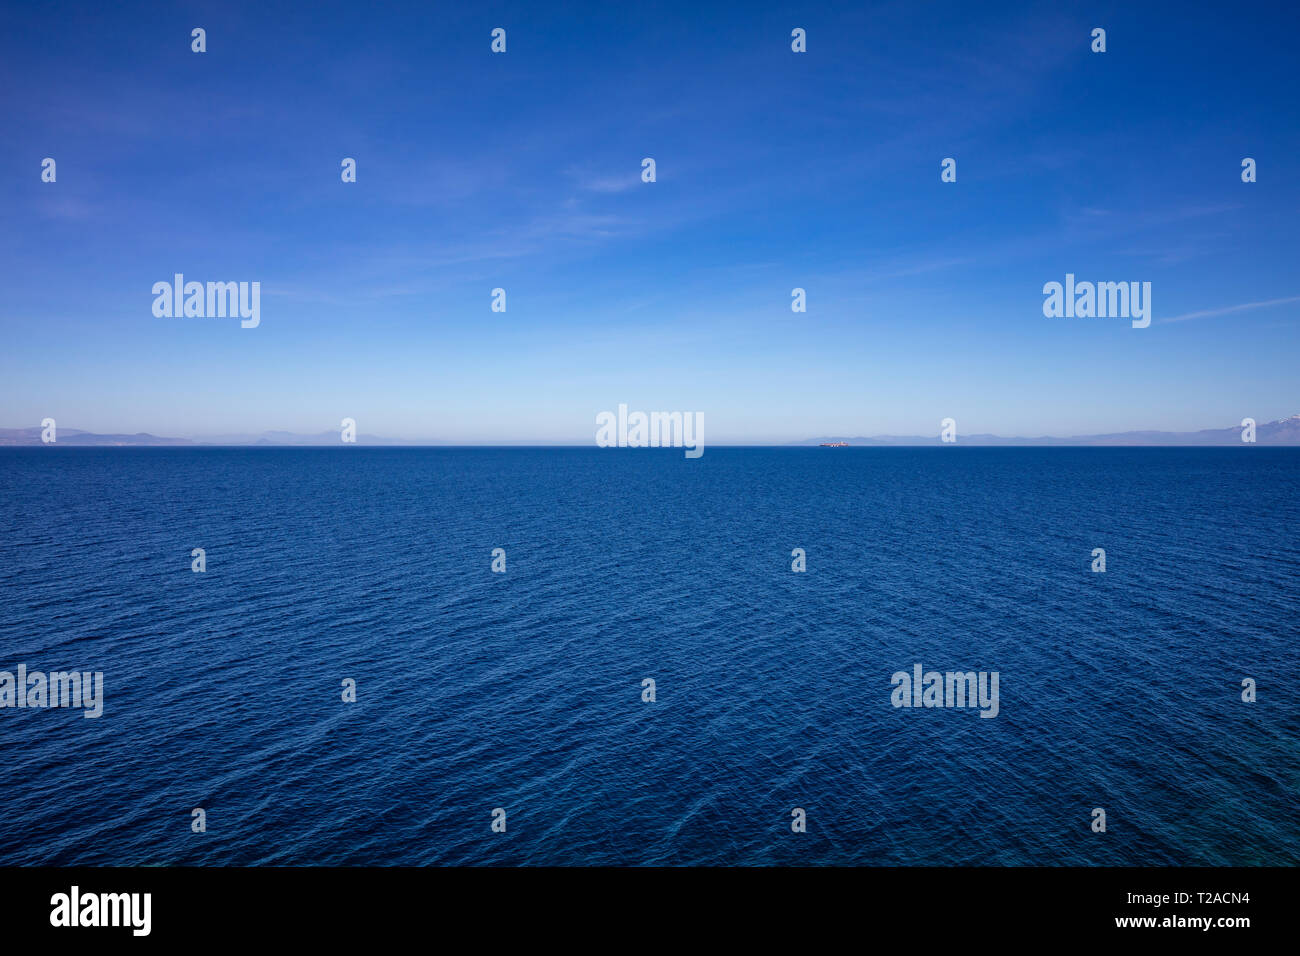 Griechenland. Ägäis. Blauer Himmel und ruhiges Meer Wasser Textur Hintergrund, hohe Betrachtungswinkel Stockfoto